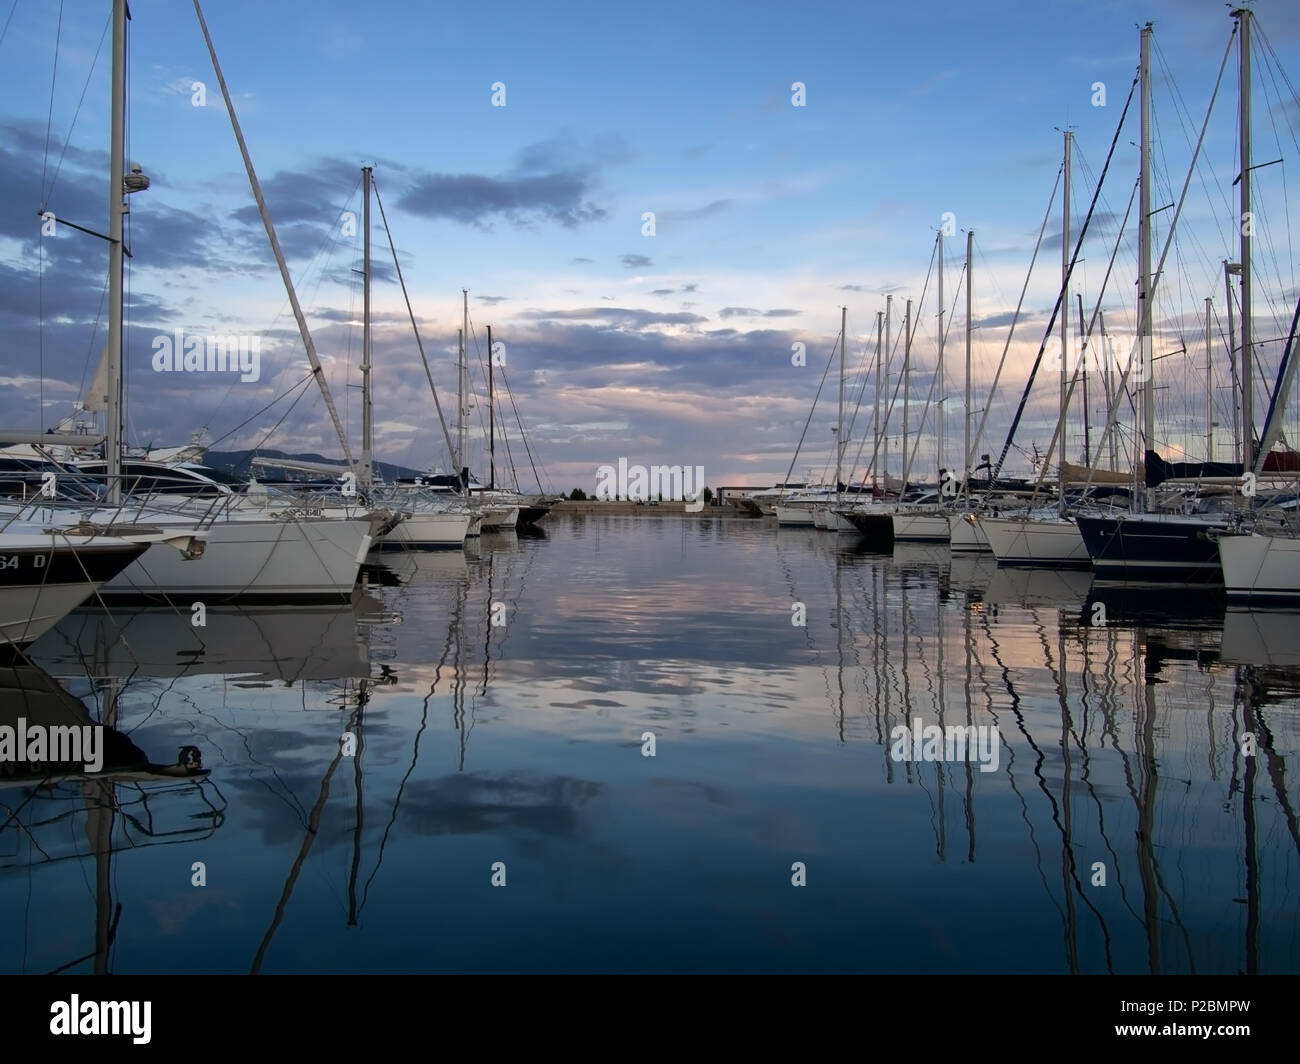 LA SPEZIA, Italien - 13. JUNI 2018: Abend fällt über die Marina in La Spezia, Italien, an der Küste des Mittelmeers in Ligurien. Viele reiche und berühmte Stockfoto